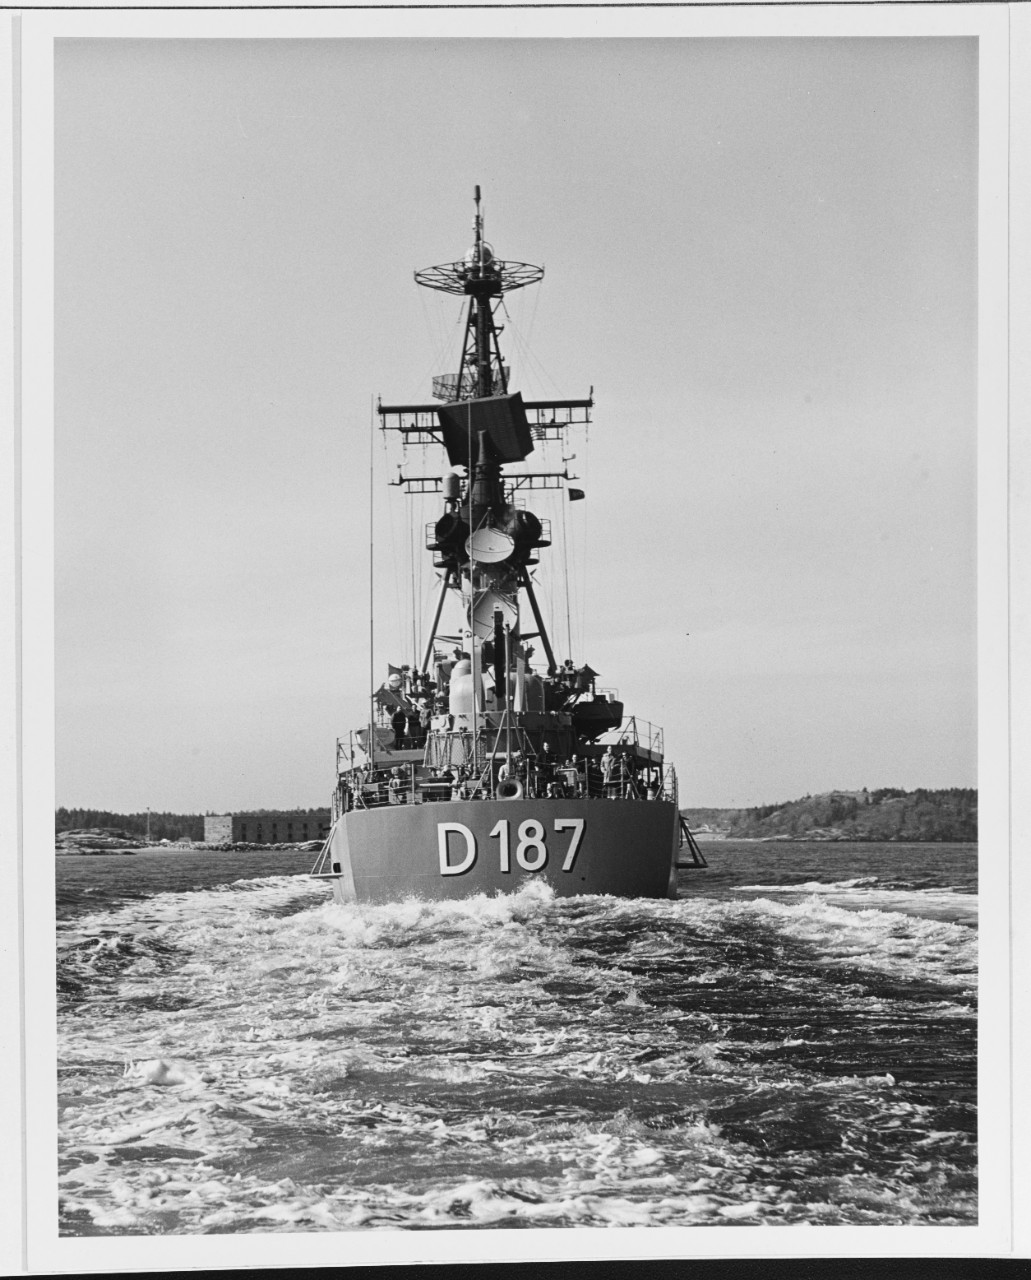 ROMMEL (German destroyer, 1969, ex. DDG-30)